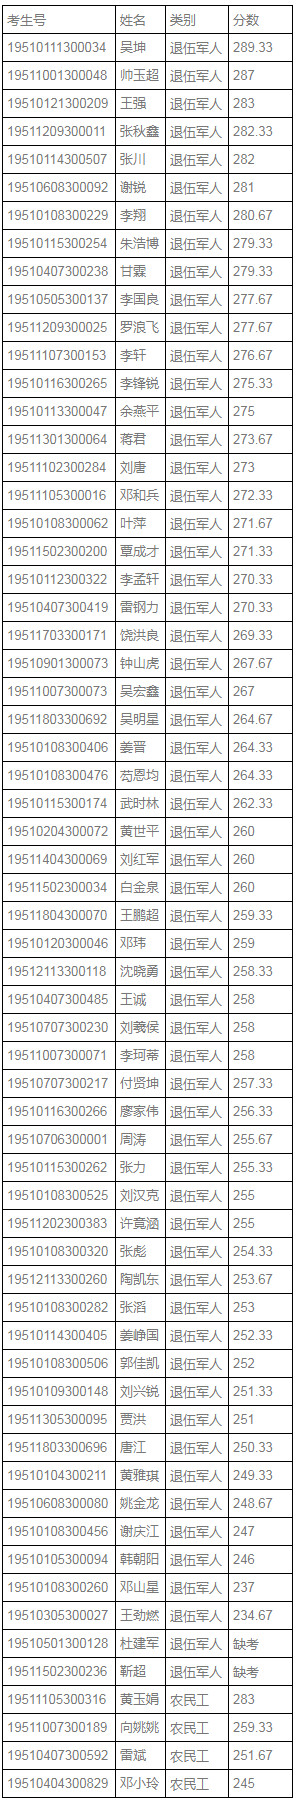 四川工商职业技术学院2019年面向退役军人等群体考试分数.jpg